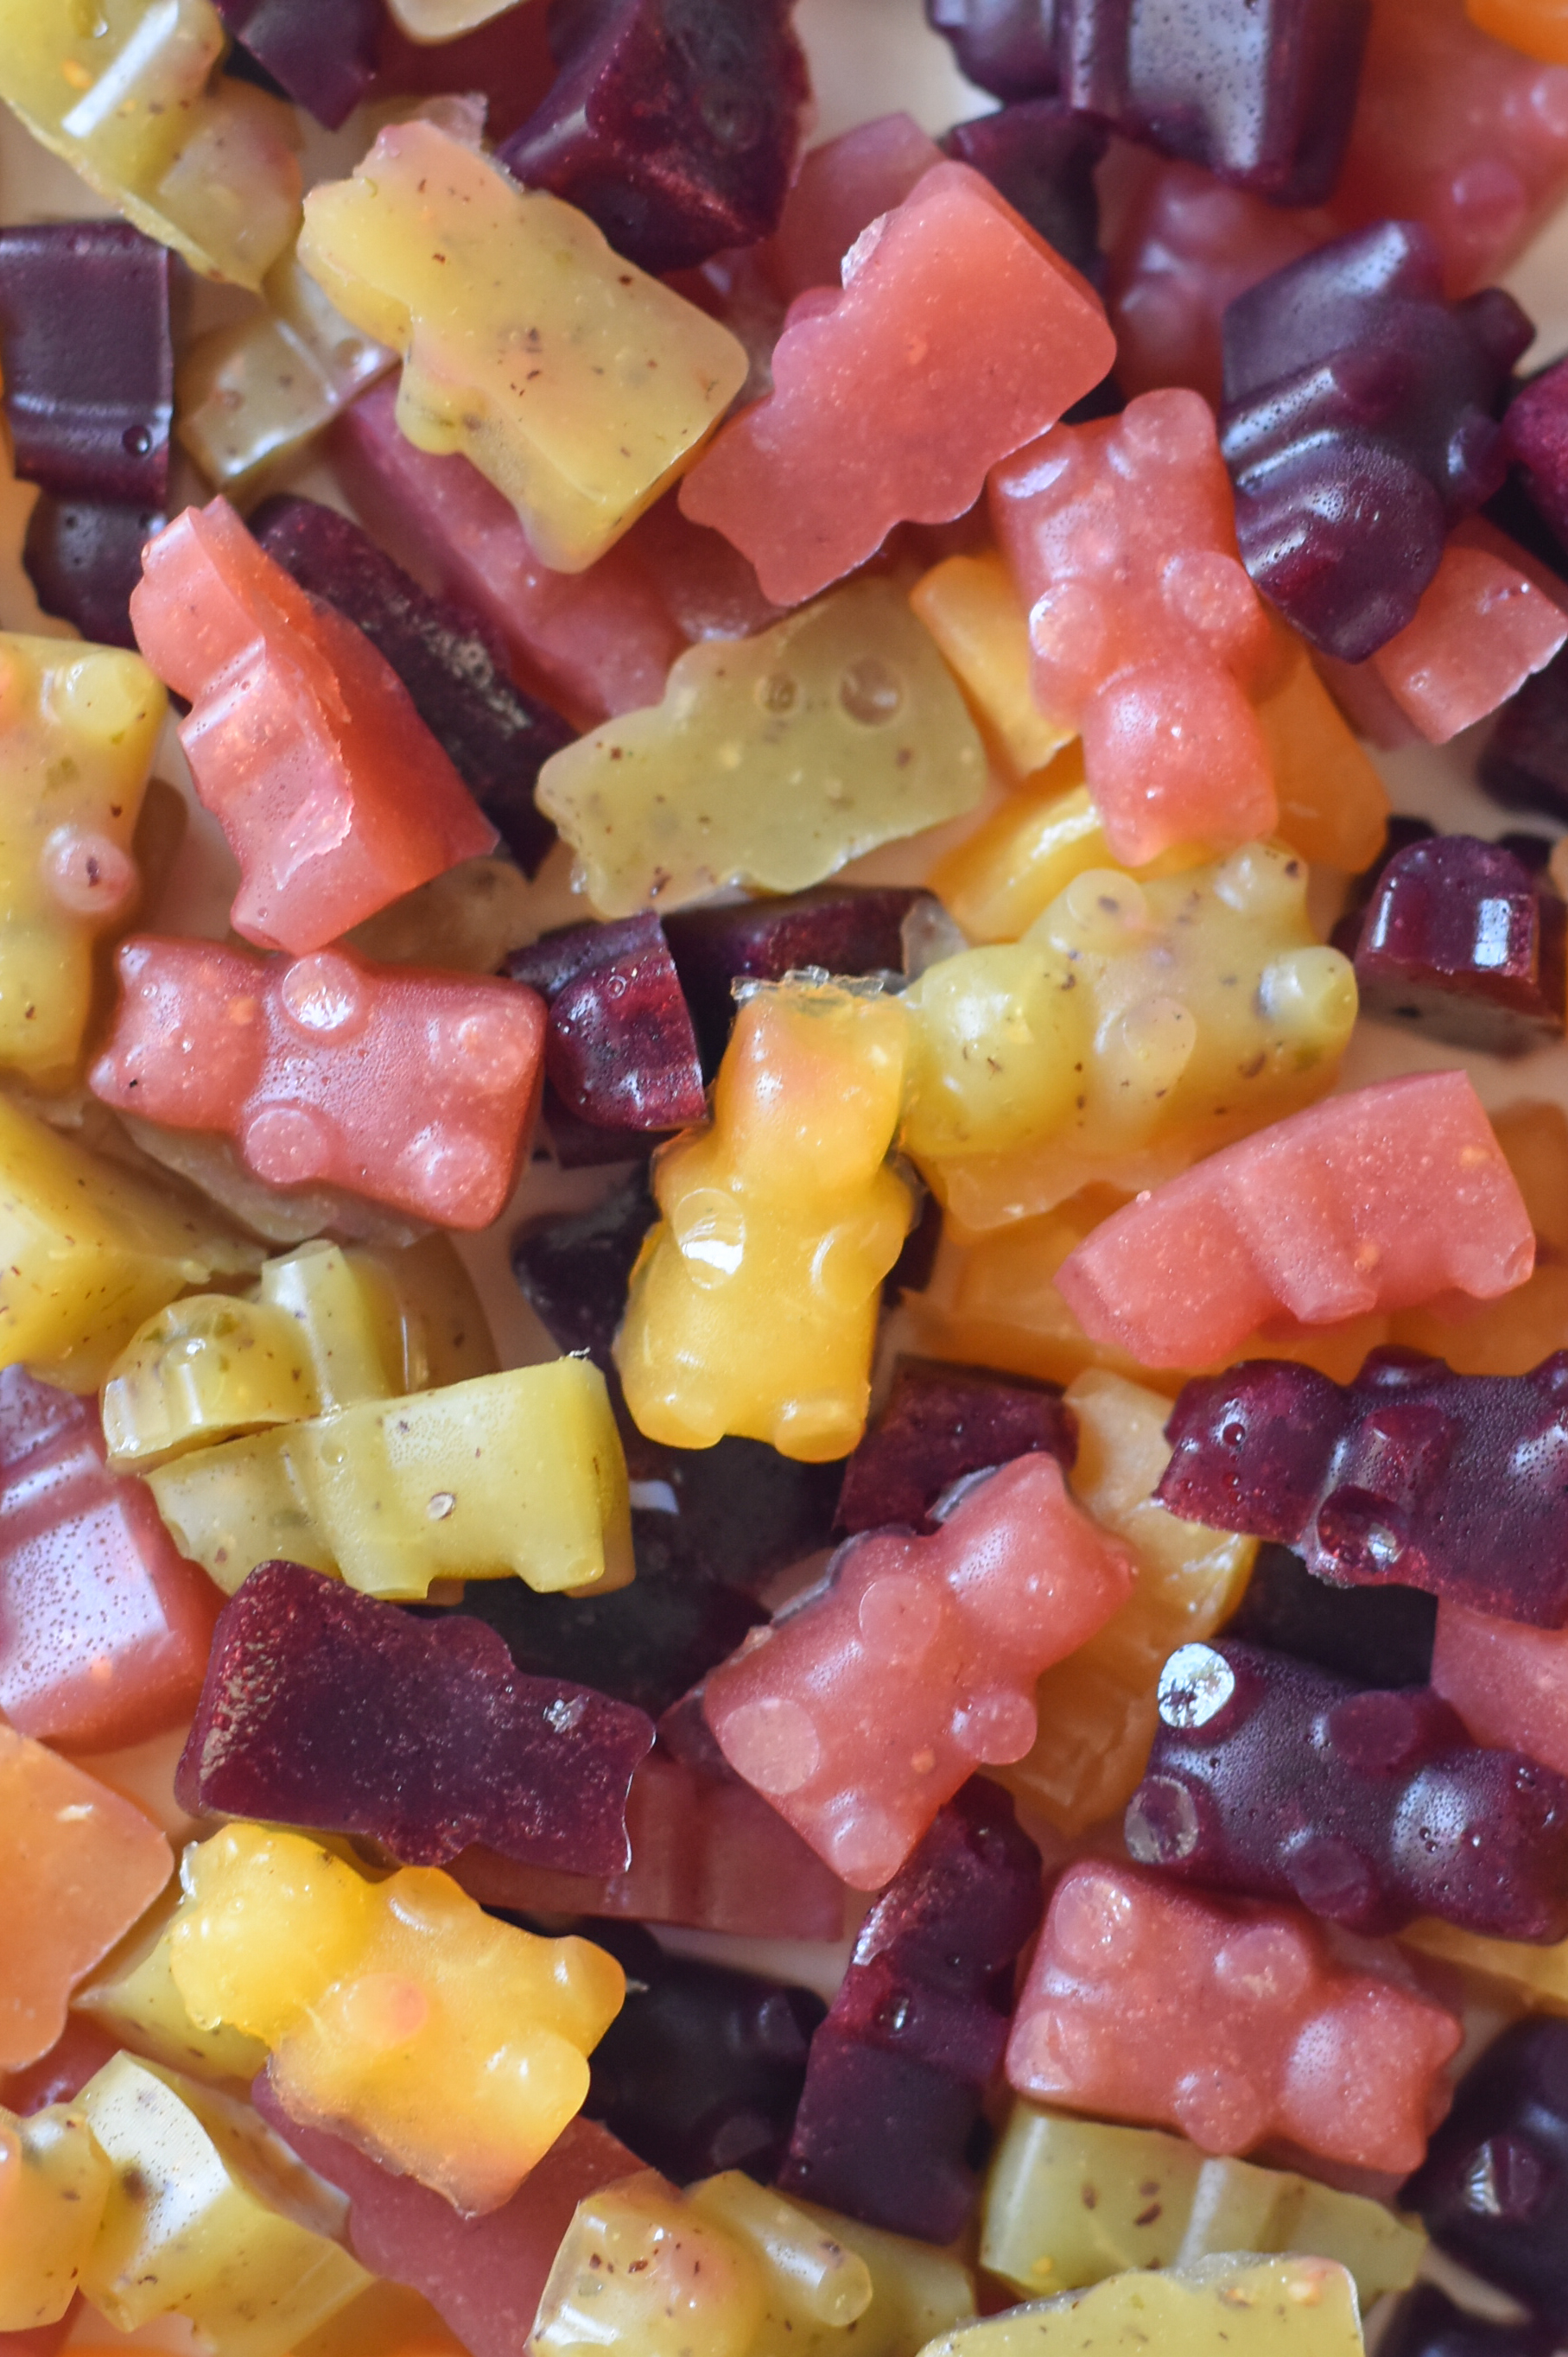 https://www.forkandbeans.com/wp-content/uploads/2015/07/Vegan-Fruit-Gummies.jpg